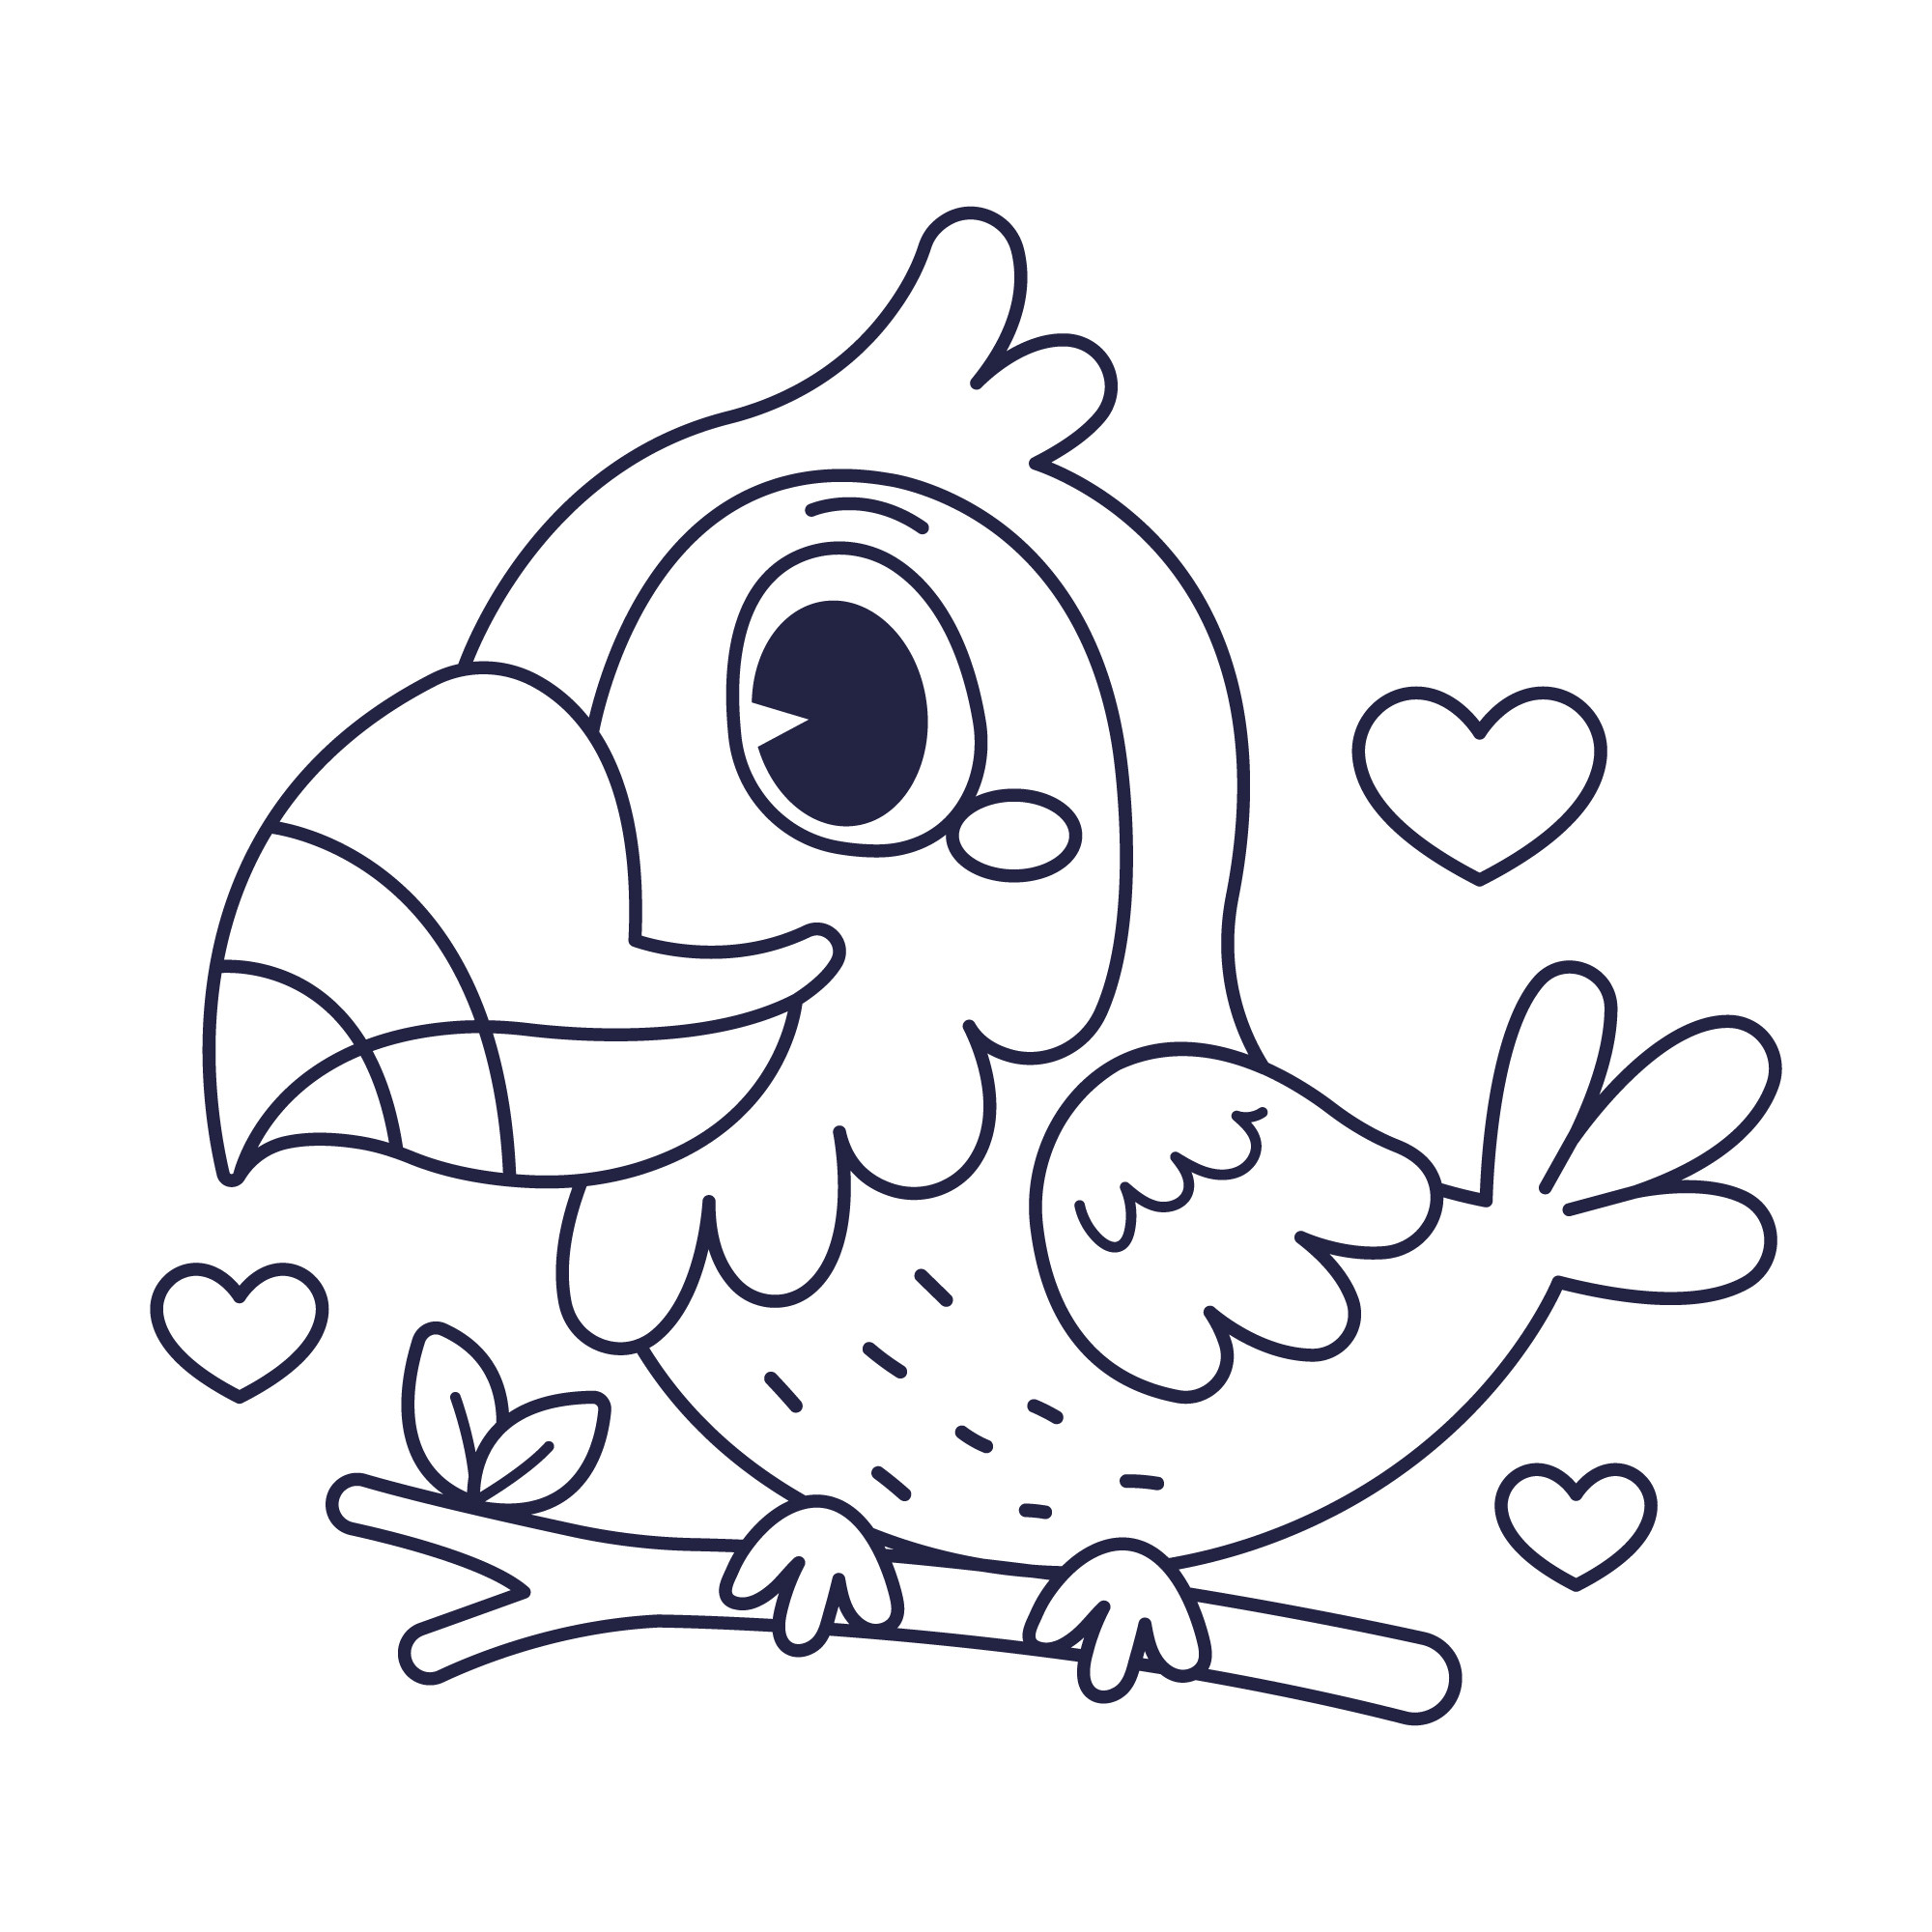 Раскраска для детей: птичка на ветке с большим клювом и сердечками